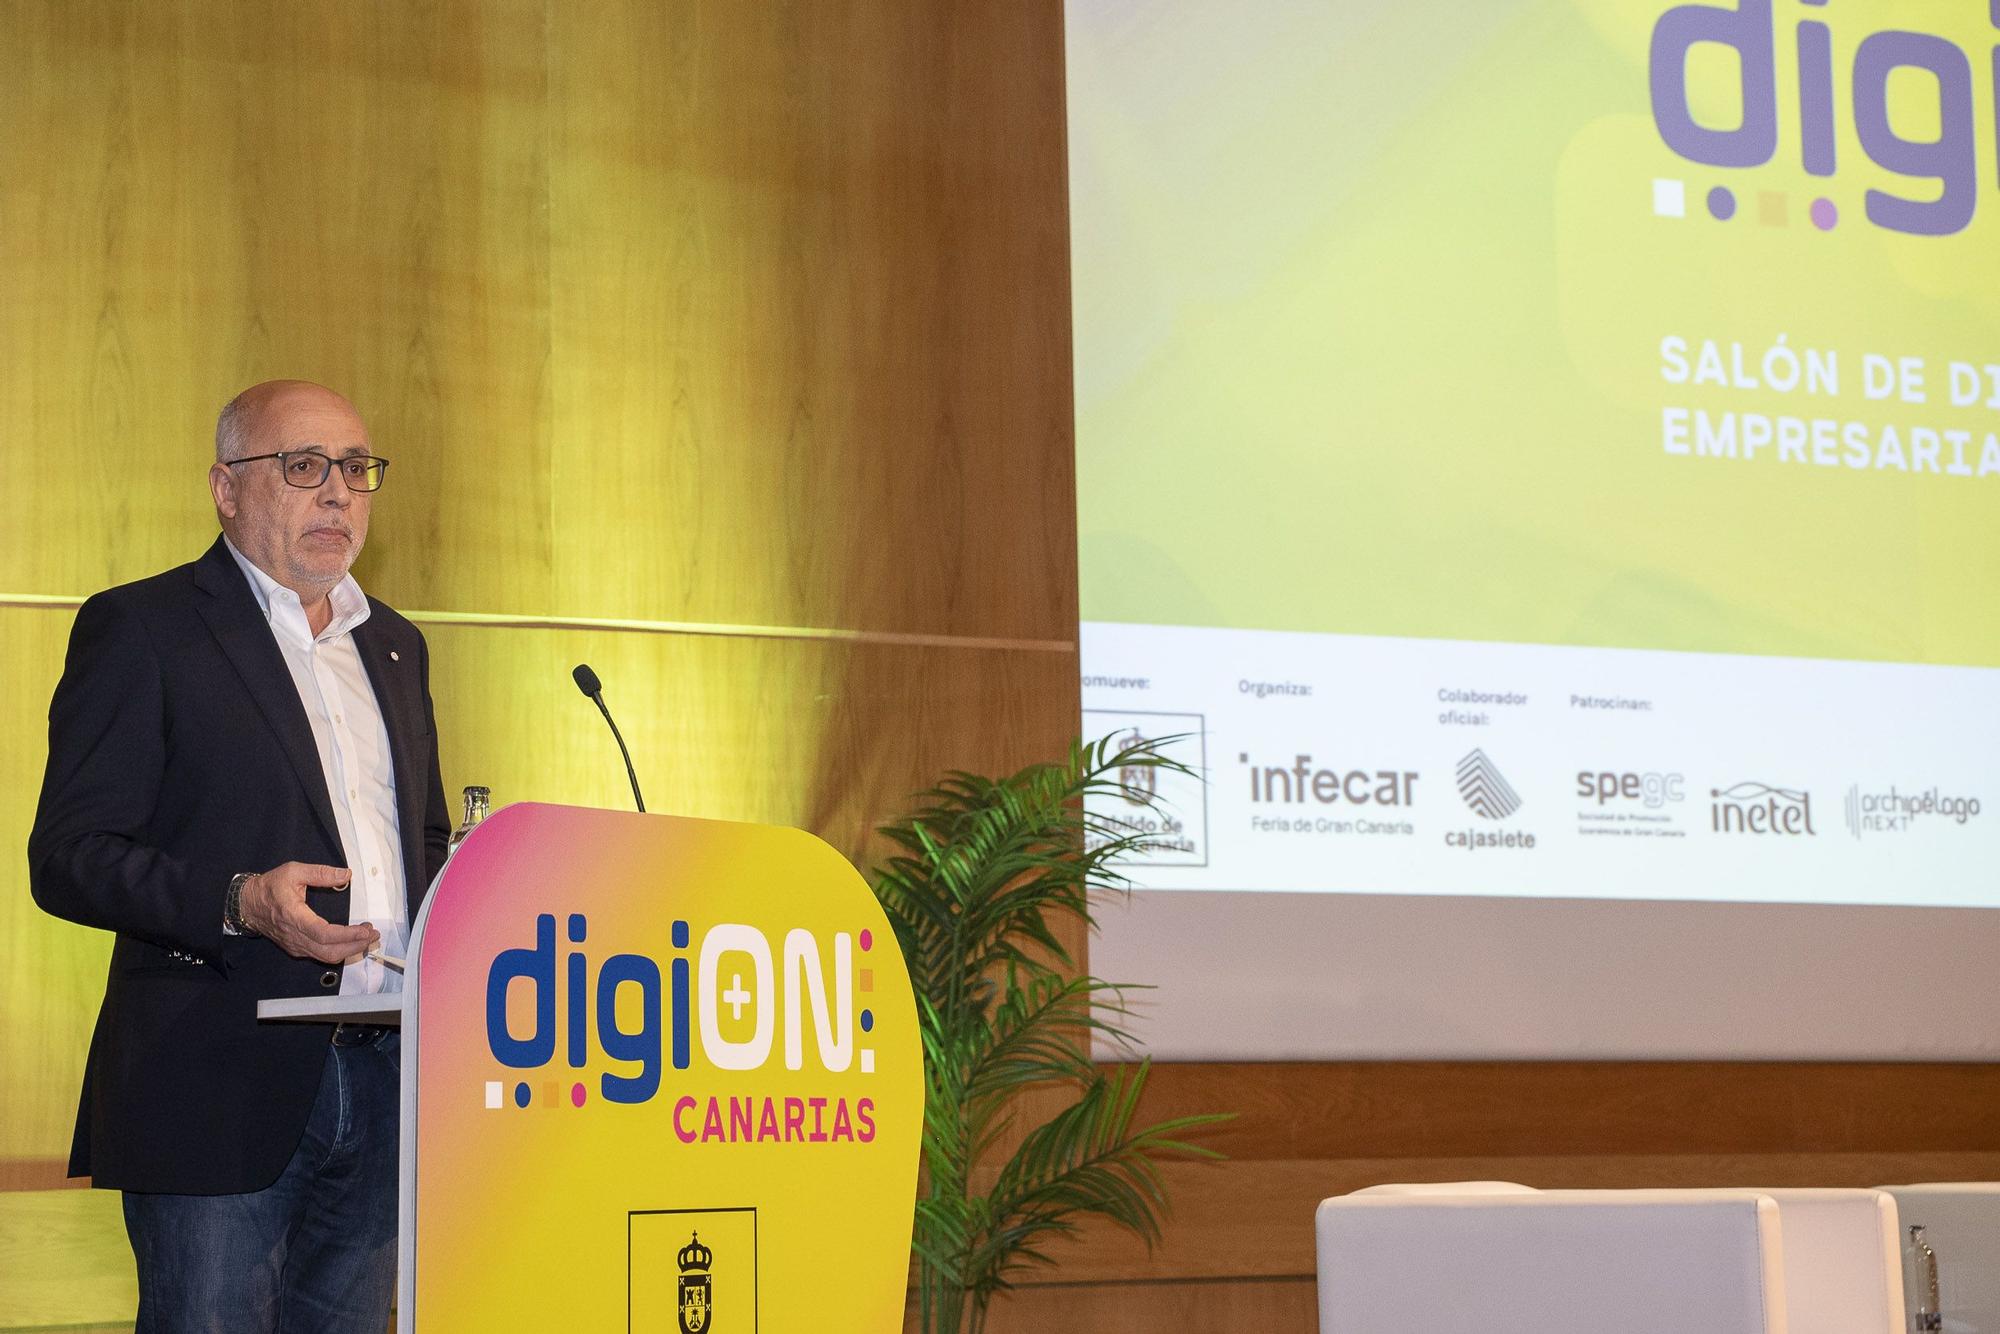 DigiON, Salón de Digitalización Empresarial de Canarias